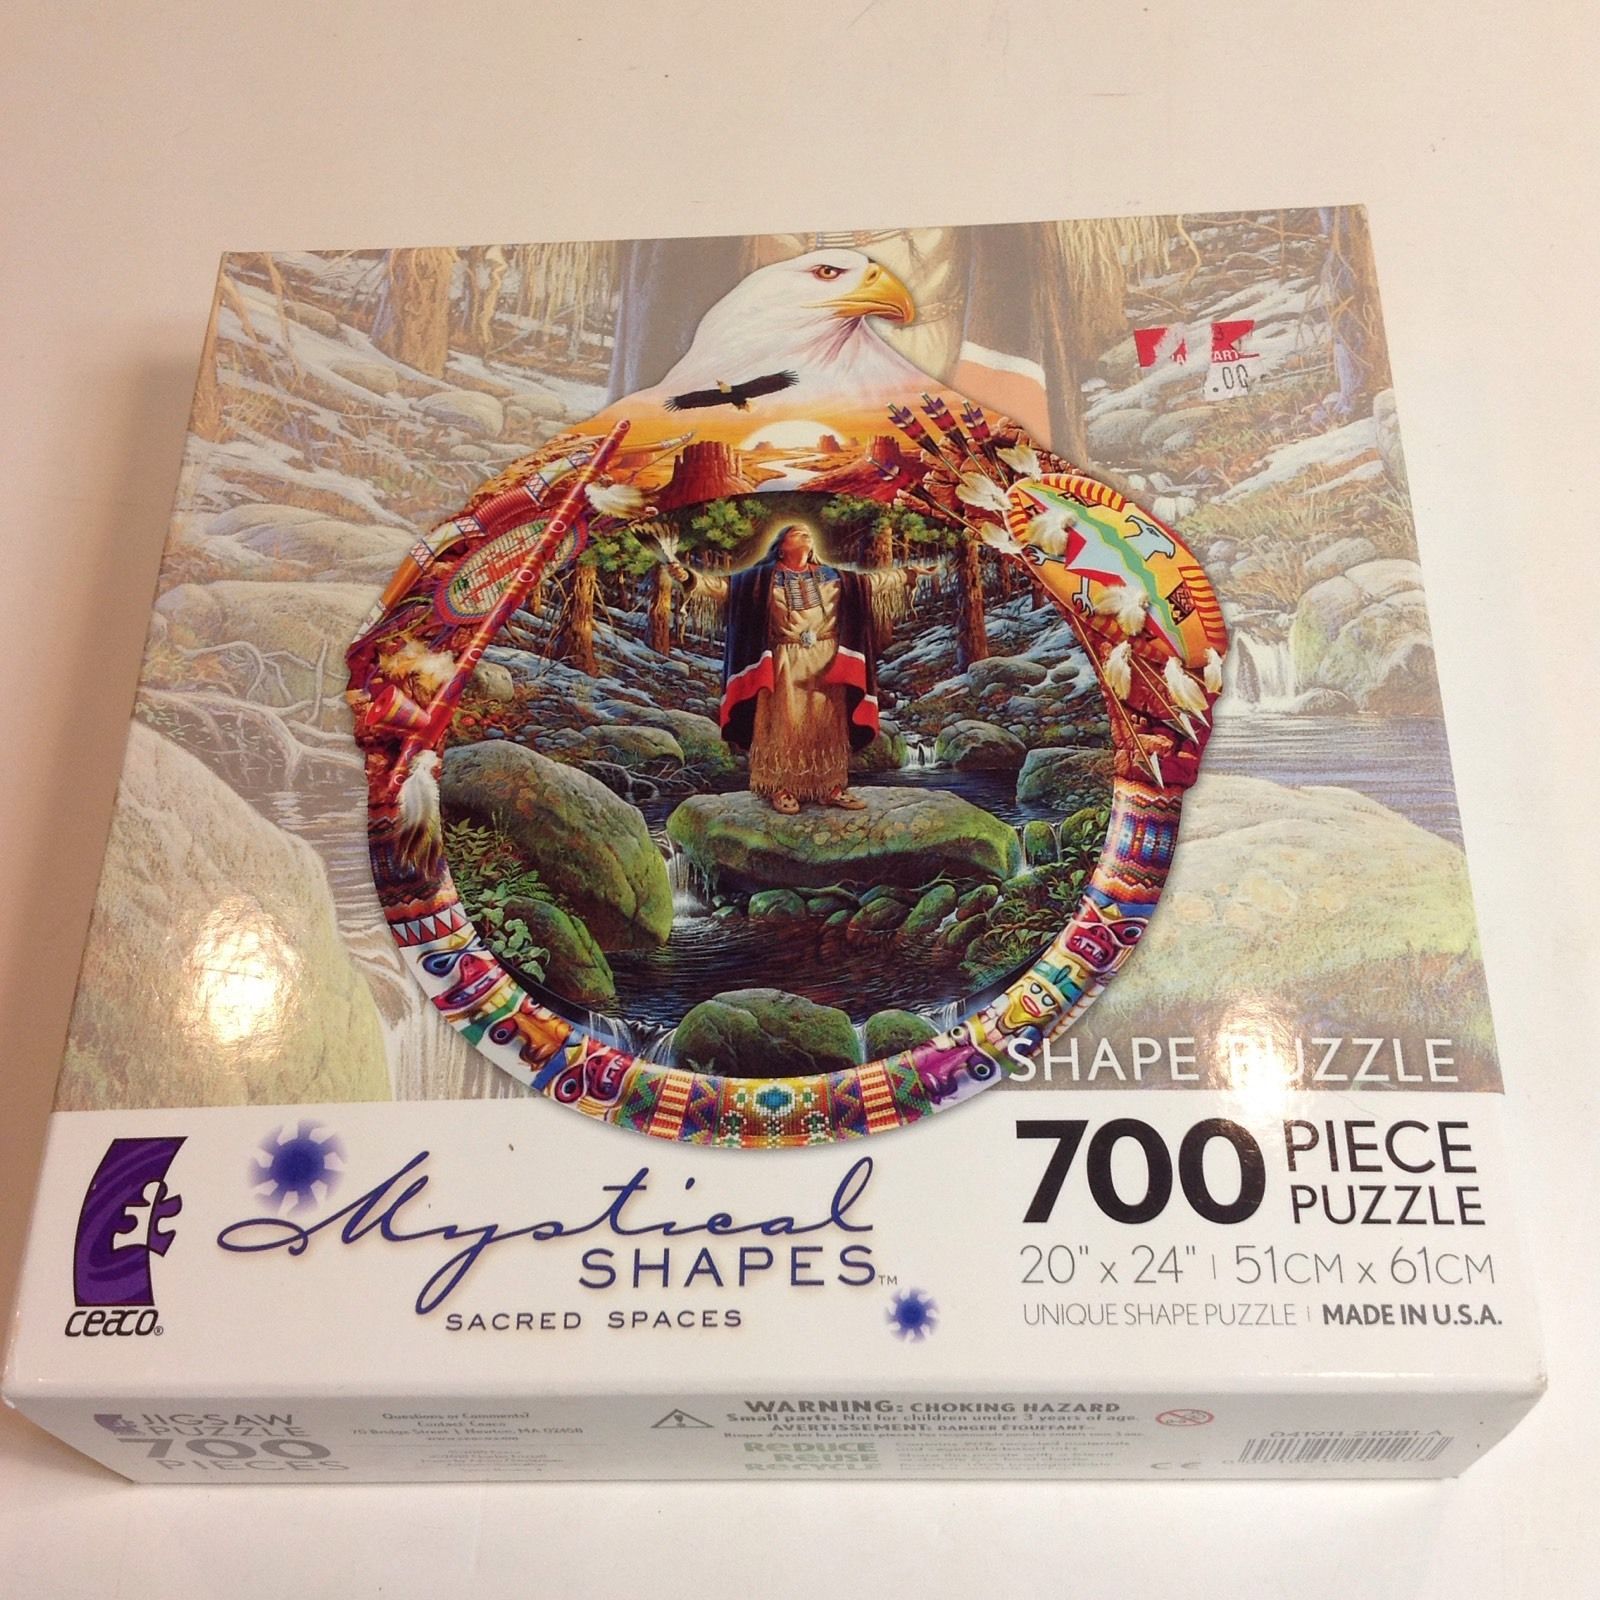 Mystical Shapes Voices of Spring Ceaco Jigsaw Puzzle 700 Pieces 20" x 24" Unique - $19.31